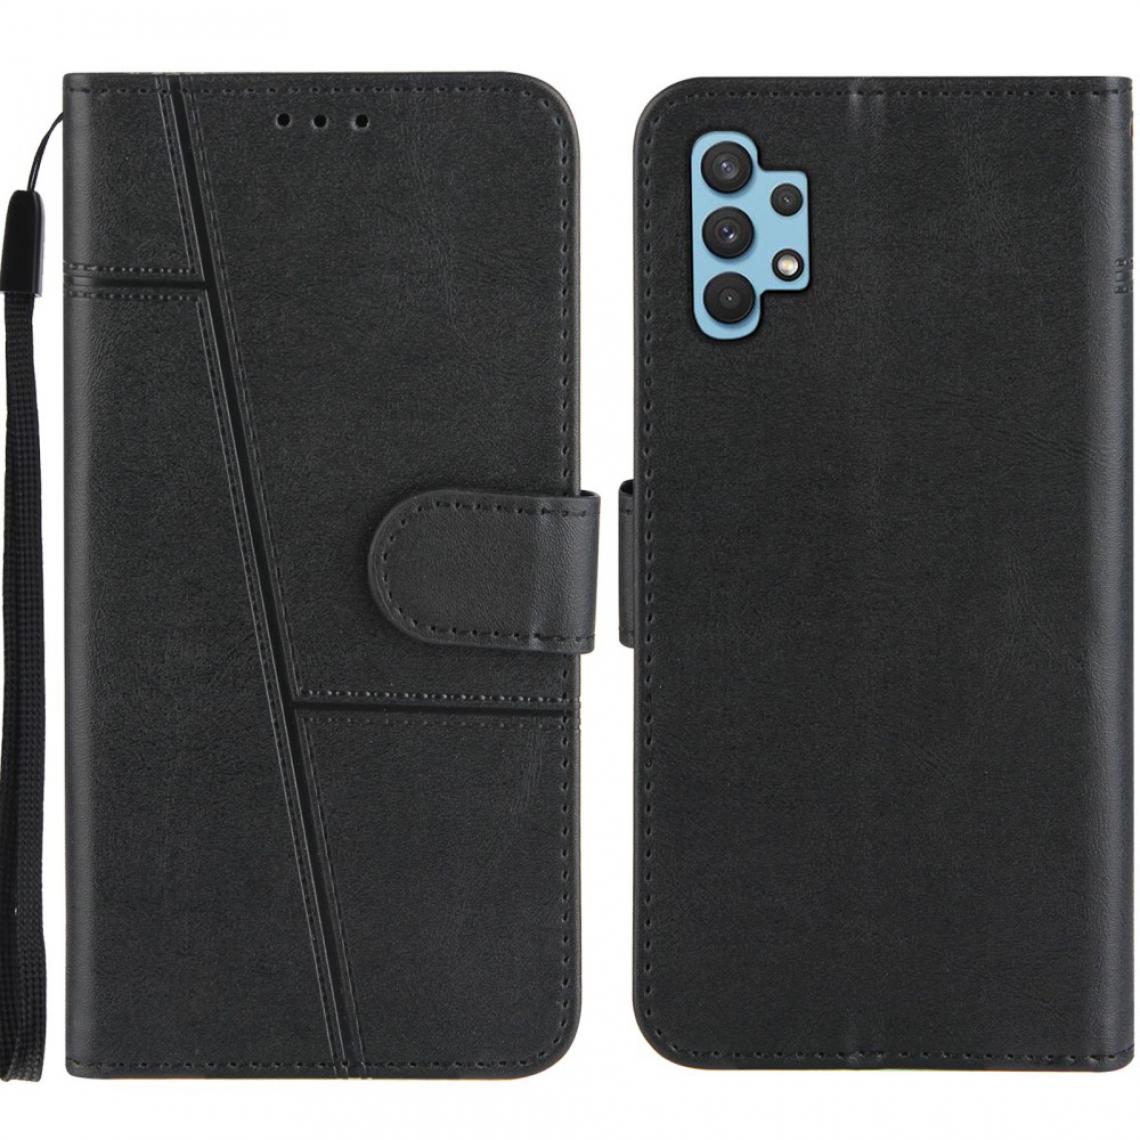 Other - Etui en PU Concis avec support et sangle noir pour votre Samsung Galaxy A32 5G - Coque, étui smartphone